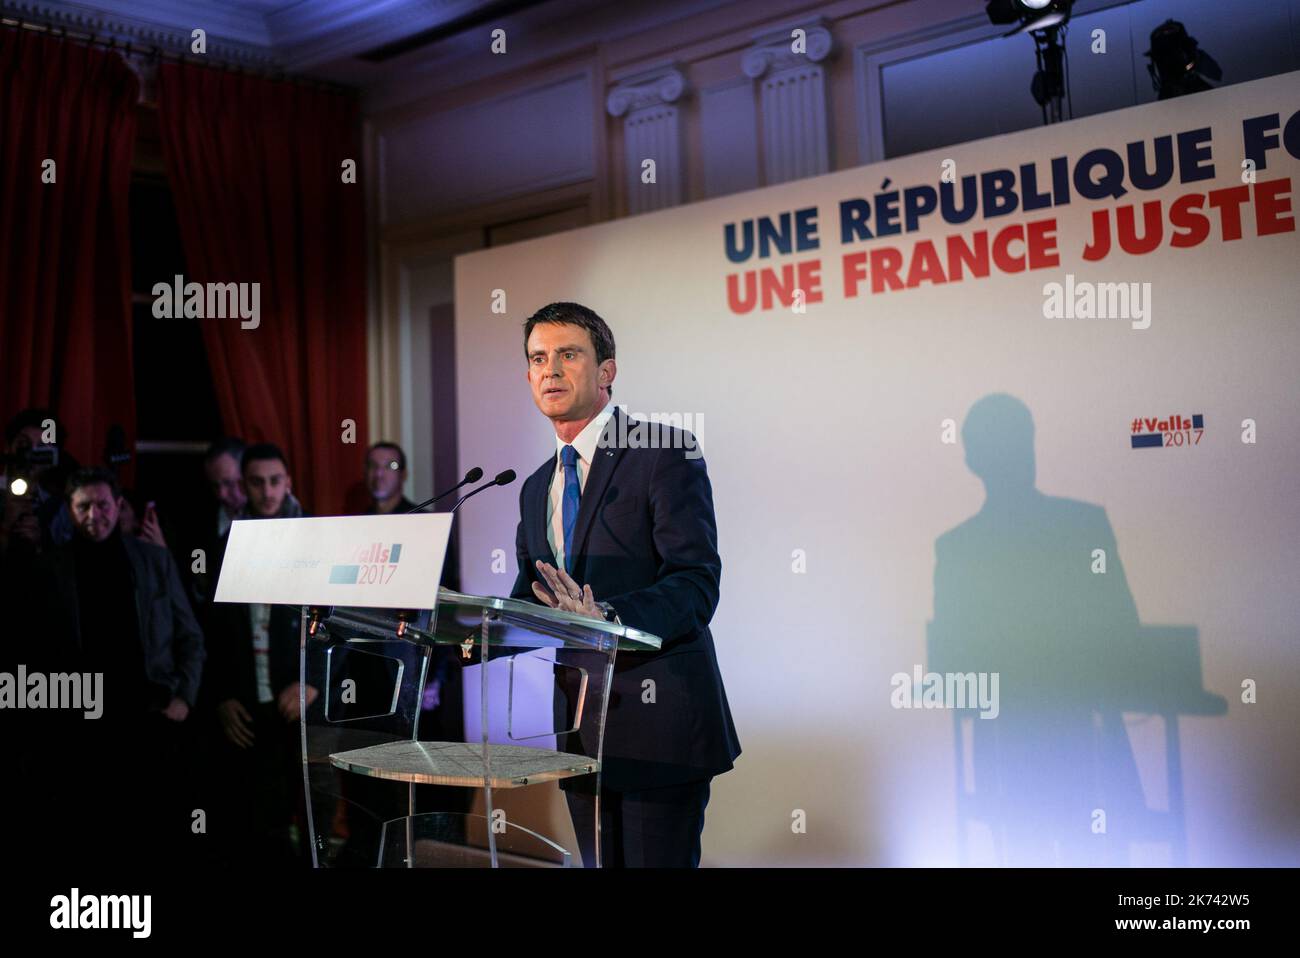 L'ancien Premier ministre français et candidat du parti de gauche, Parti socialiste Manuel Valls, prononce un discours après les résultats du premier tour des primaires du parti, le 22 janvier 2017 à Paris Banque D'Images